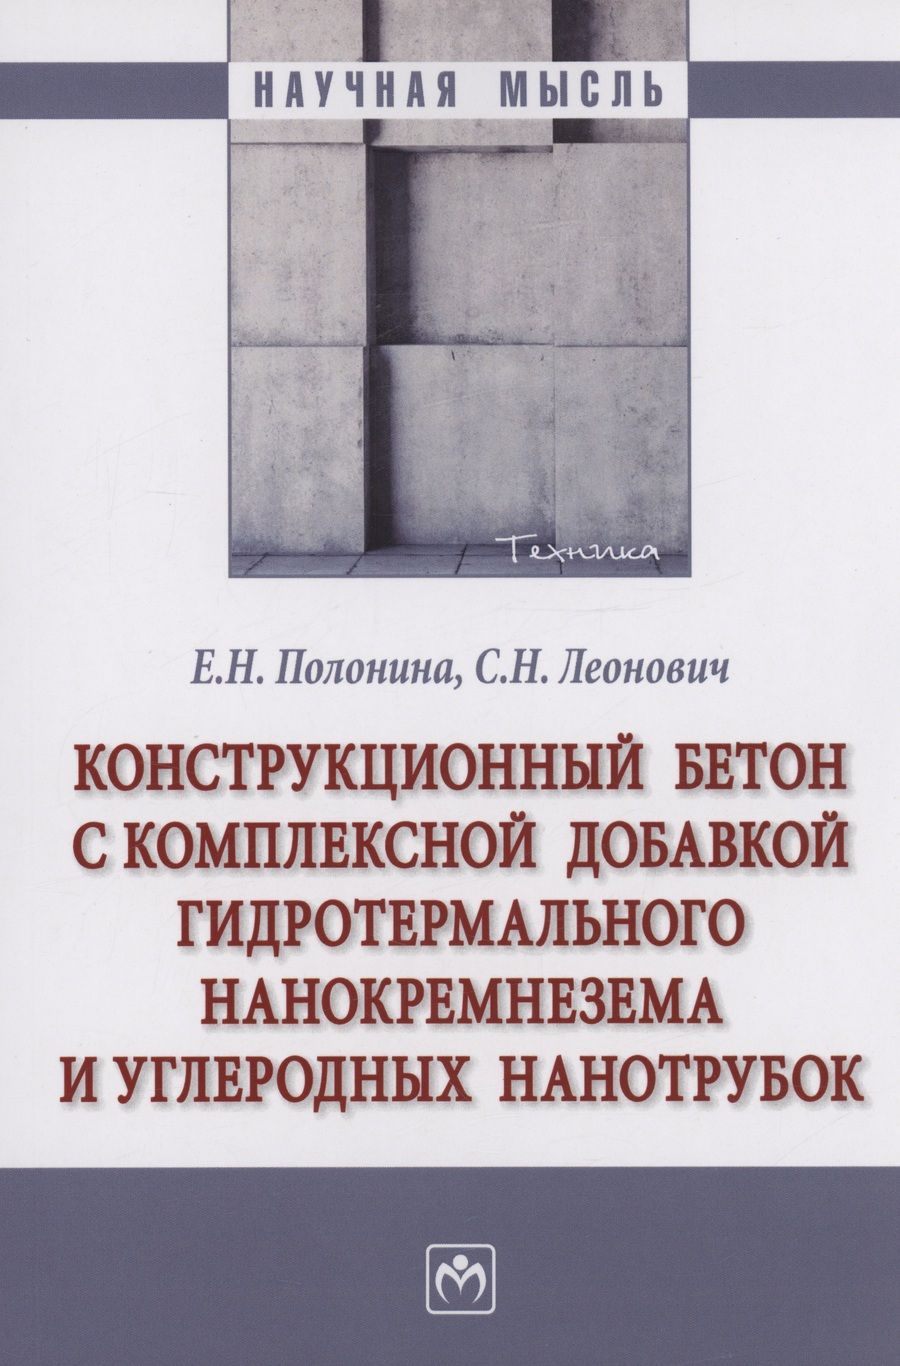 Обложка книги "Полонина, Леонович: Конструкционный бетон с комплексной добавкой гидротермального нанокремнезема и углеродных нанотрубок"